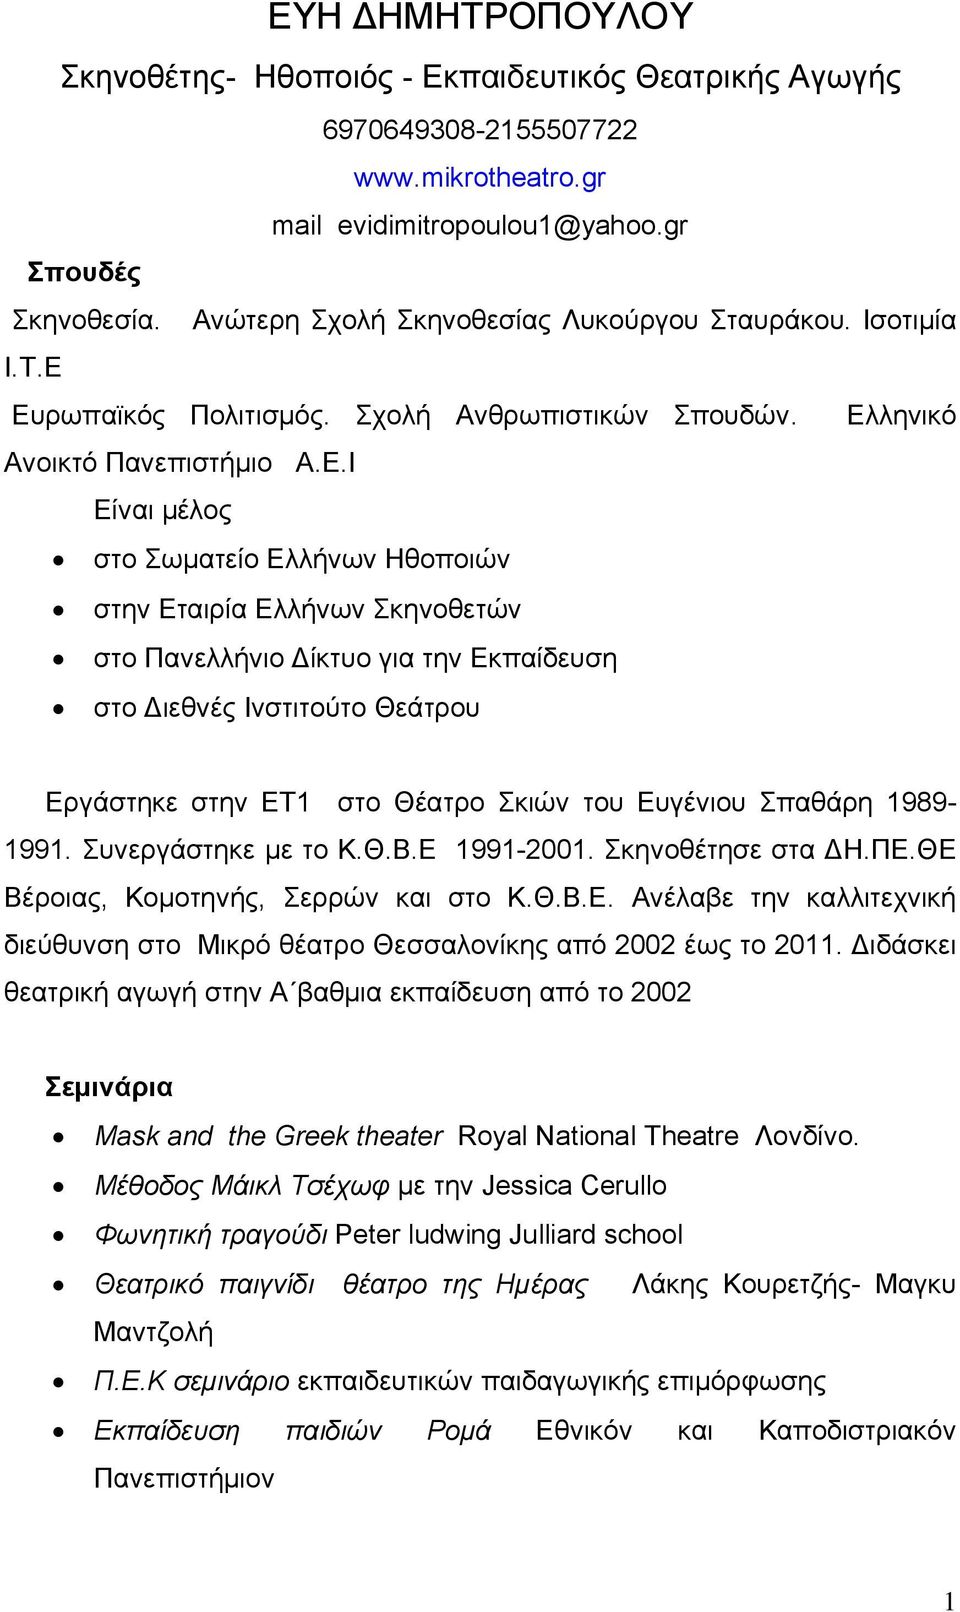 Ευρωπαϊκός Πολιτισμός. Σχολή Ανθρωπιστικών Σπουδών. Ελληνικό Ανοικτό Πανεπιστήμιο Α.Ε.Ι Είναι μέλος στο Σωματείο Ελλήνων Ηθοποιών στην Εταιρία Ελλήνων Σκηνοθετών στο Πανελλήνιο Δίκτυο για την